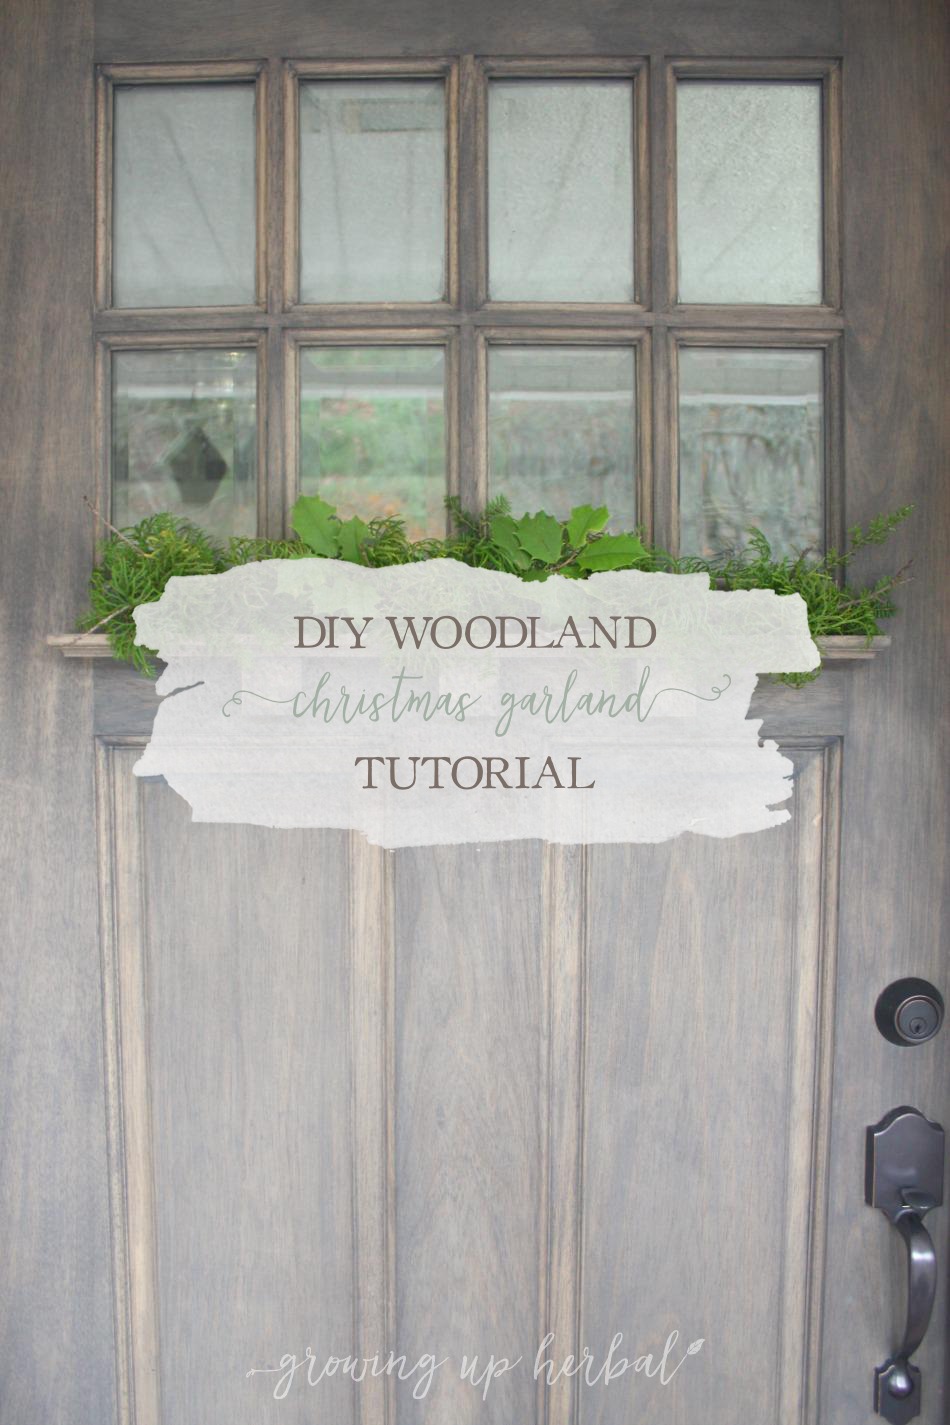 DIY Woodland Christmas Garland Tutorial | Growing Up Herbal | A Woodland Christmas garland tutorial using natural supplies.